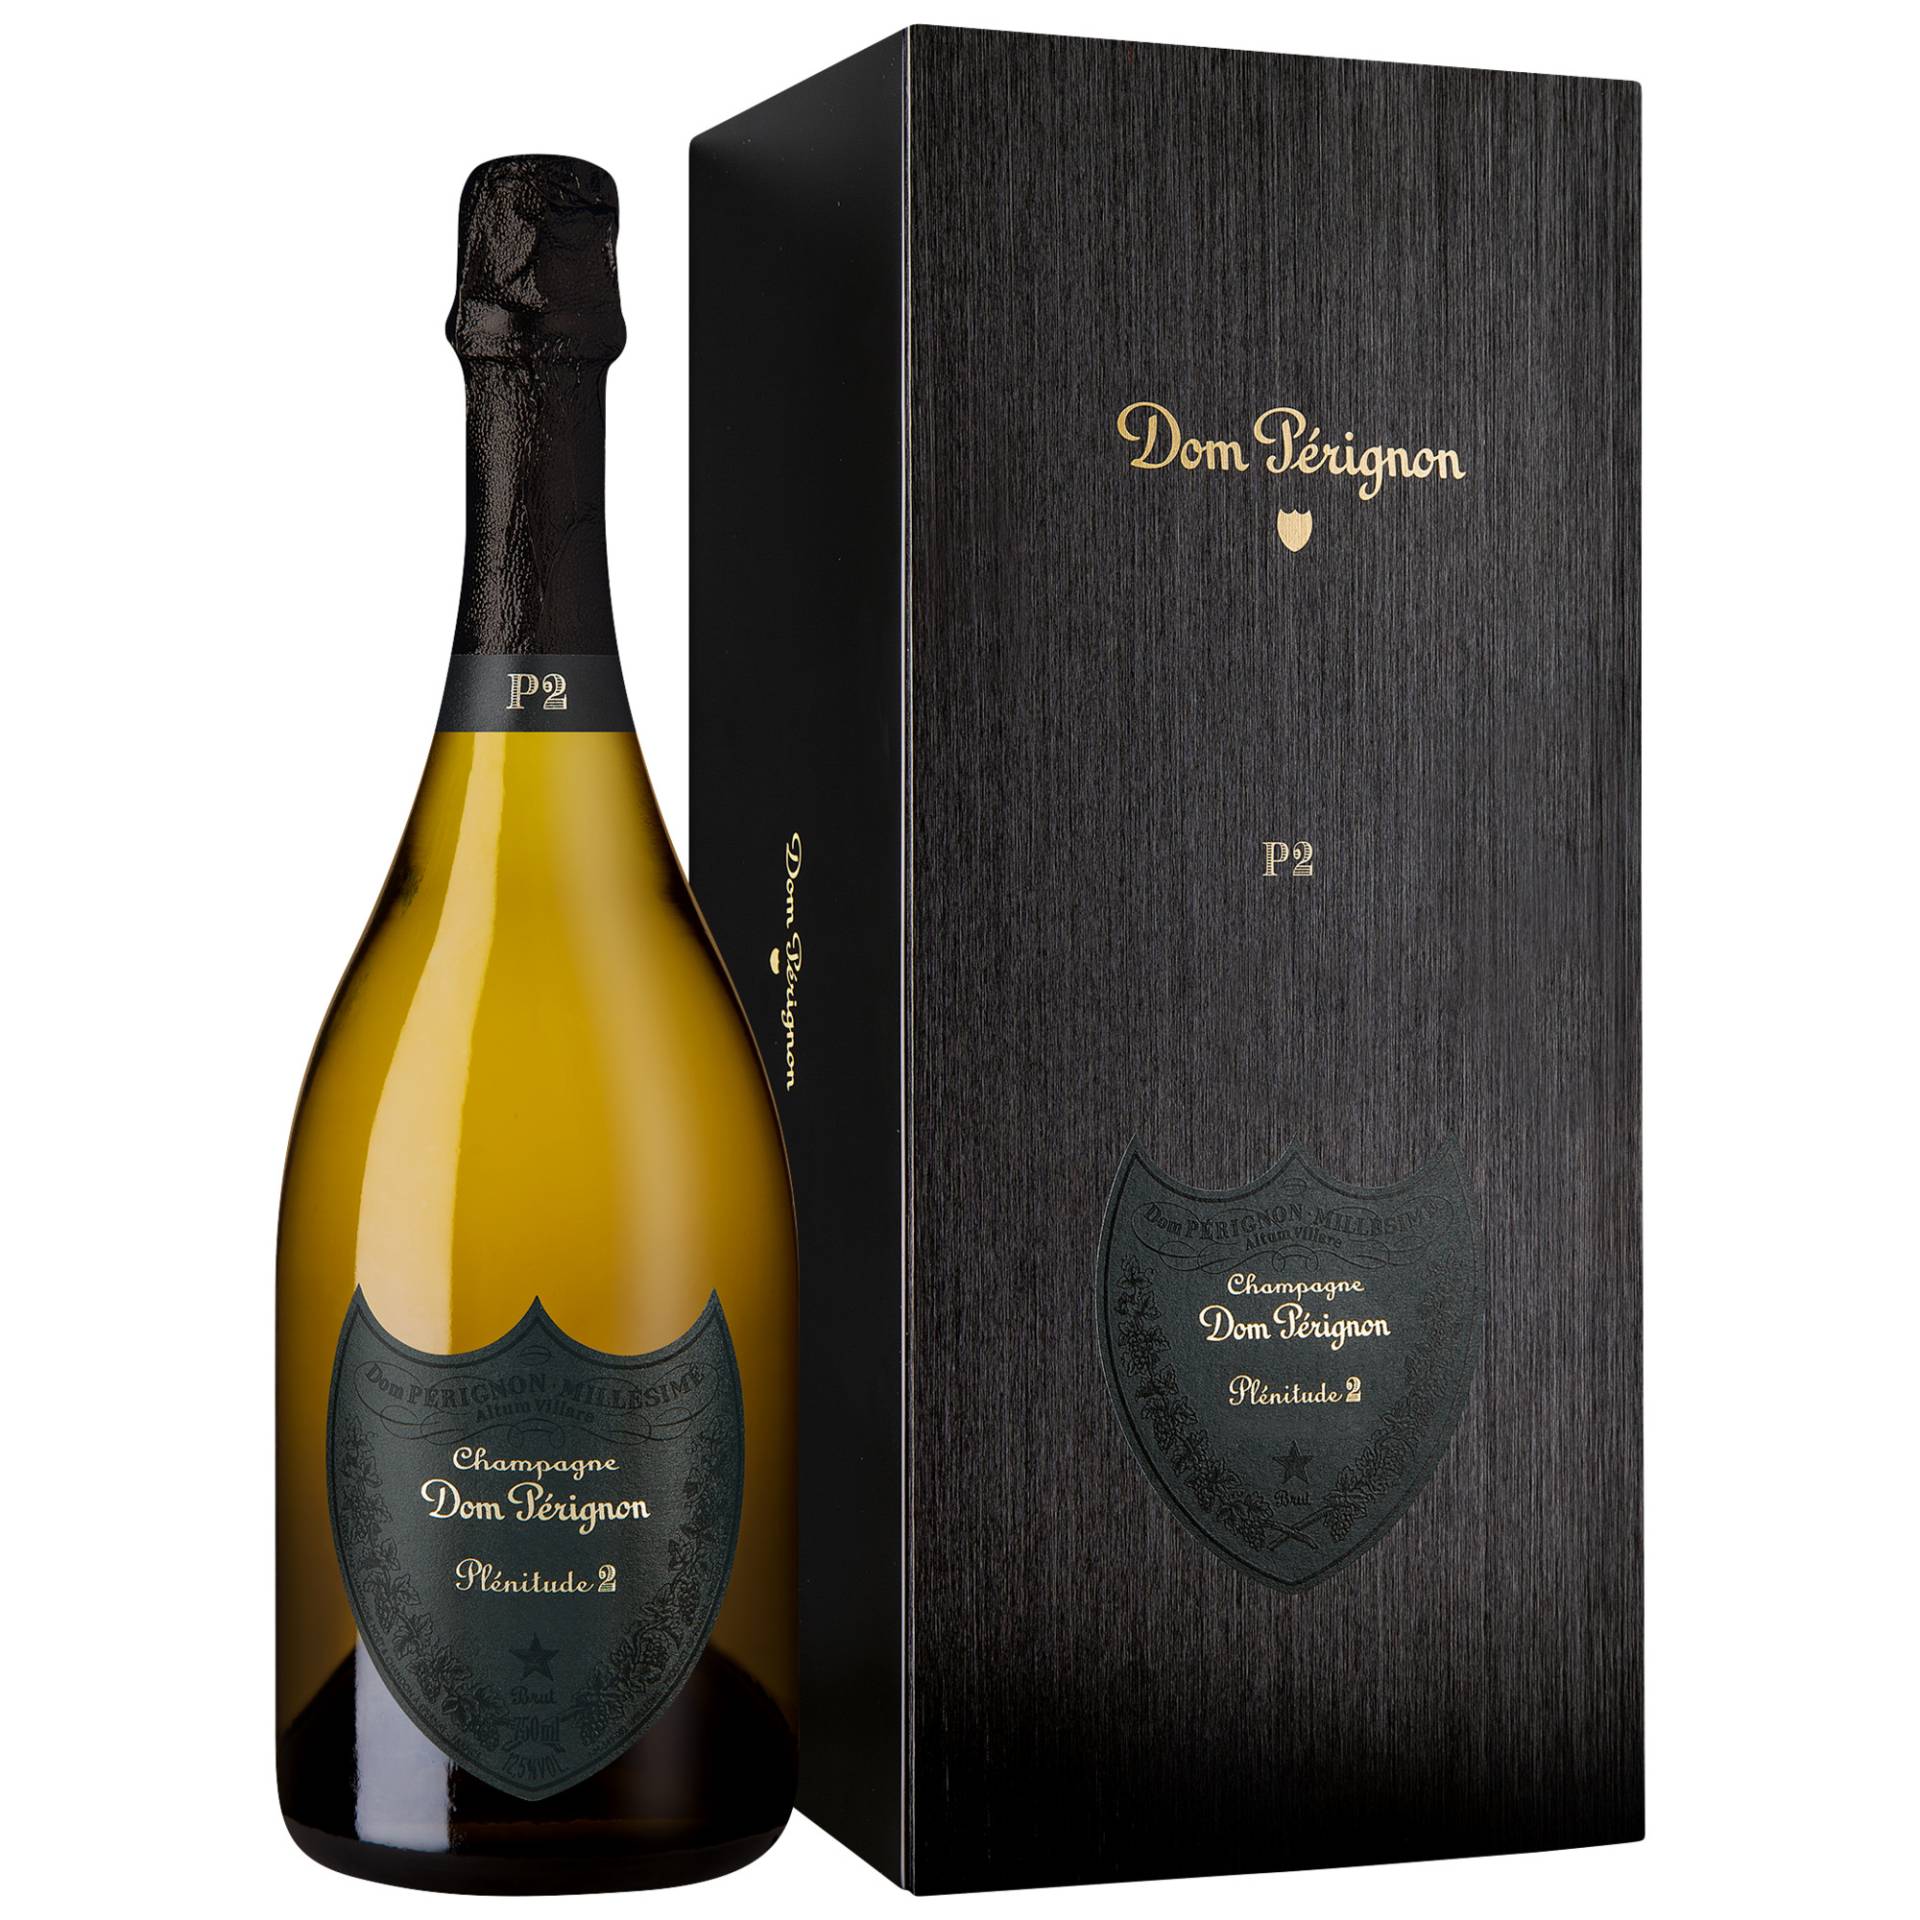 Champagne Dom Pérignon P2, Brut, Champagne AC, Geschenketui, Champagne, 2004, Schaumwein von Champagne Moet & Chandon, Epernay, France